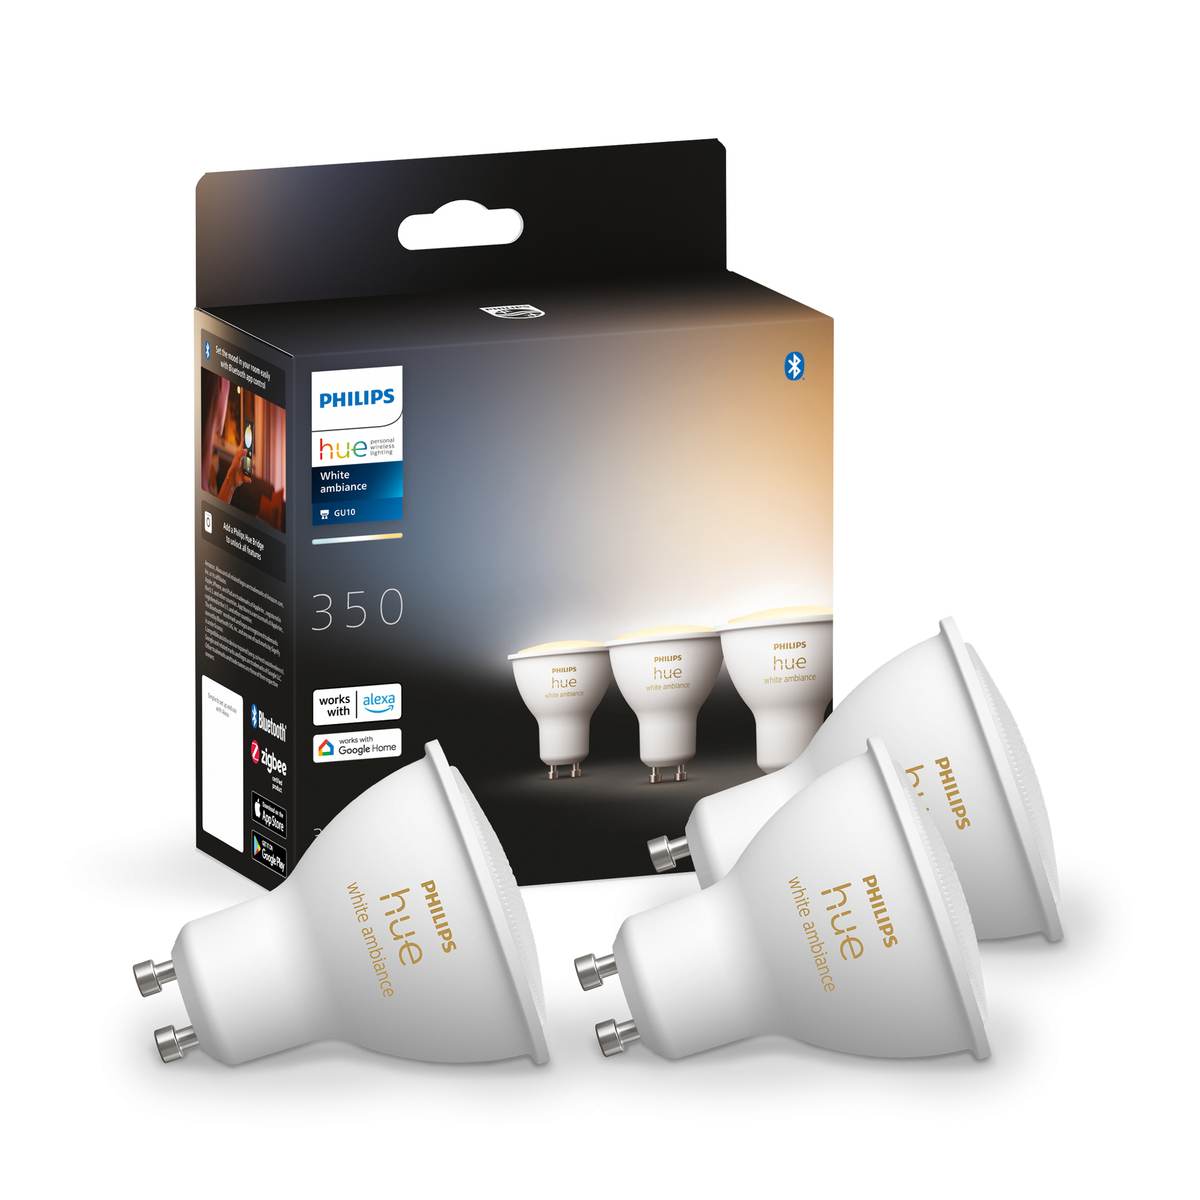 Philips Hue | | dimmbar Sprache Onlineshop Ambiance your-smarthome | oder GU10 via Spot Leuchtmittel Licht App 350lm GU10 LED White Home Dreierpack Tunable Smart | White Dein 